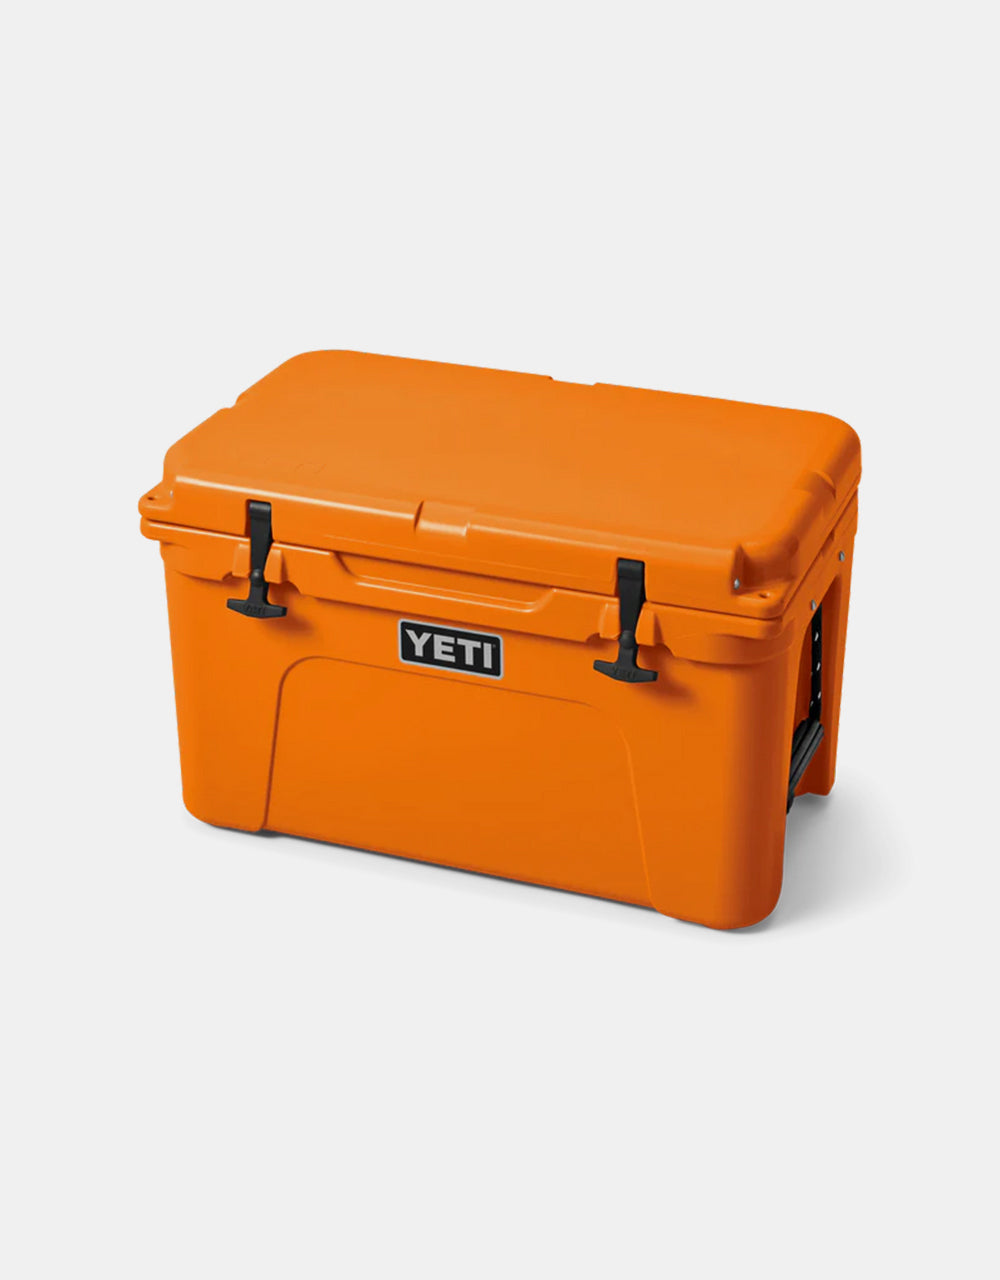 YETI Tundra® 45 Cool Box - King Crab Orange